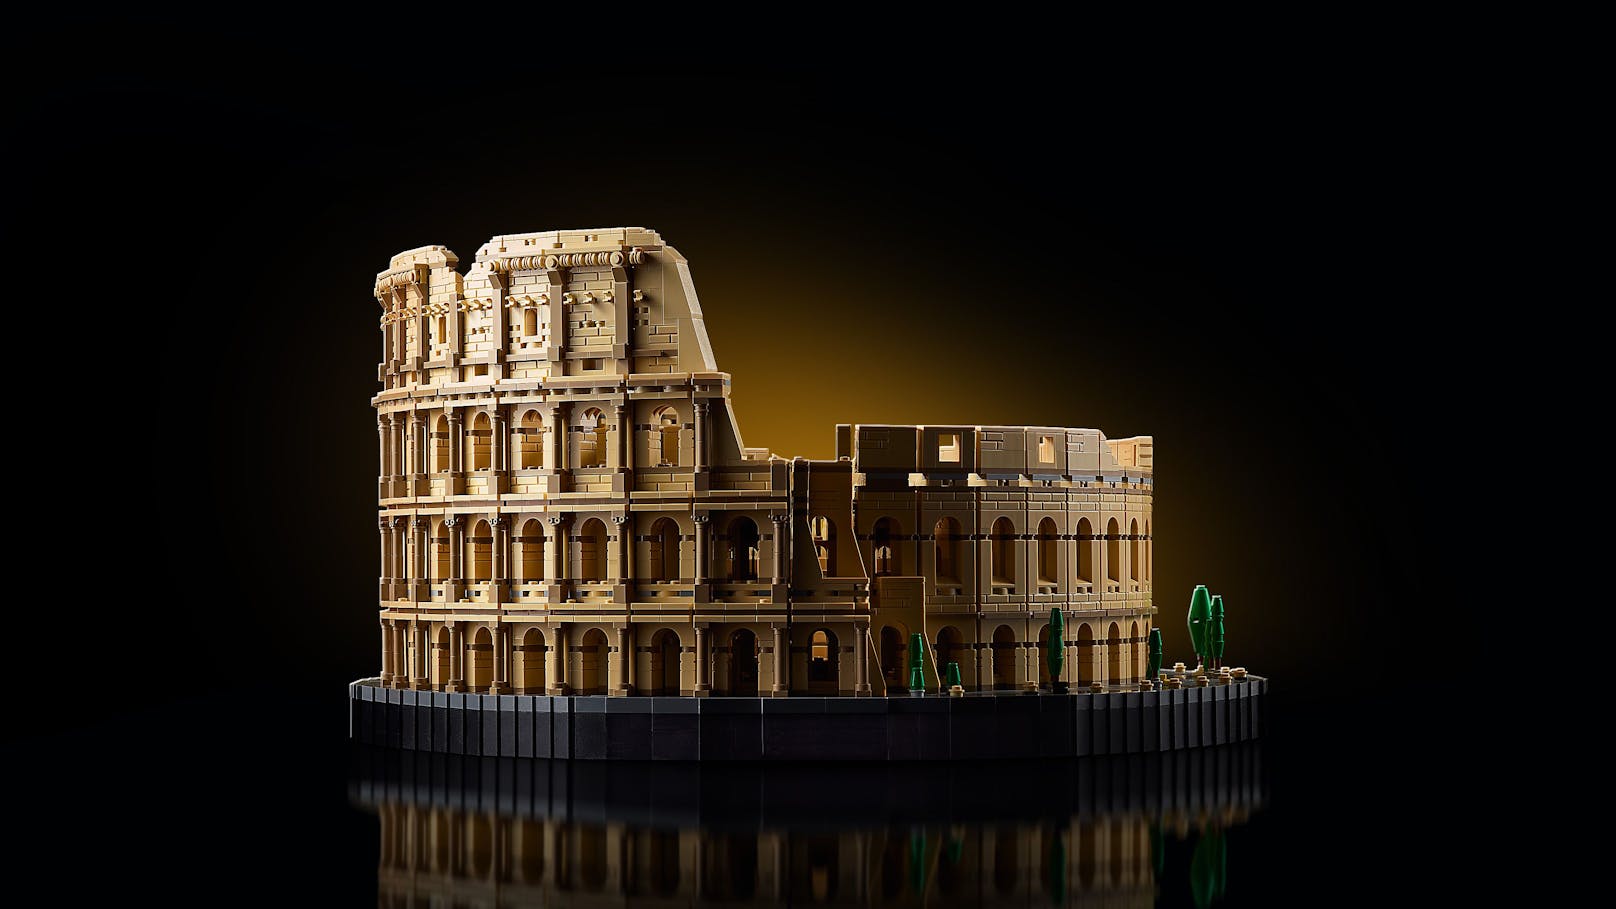 Aus 9.036 Teilen besteht der bisher größte Lego-Bausatz und zeigt das römische Kollosseum. 